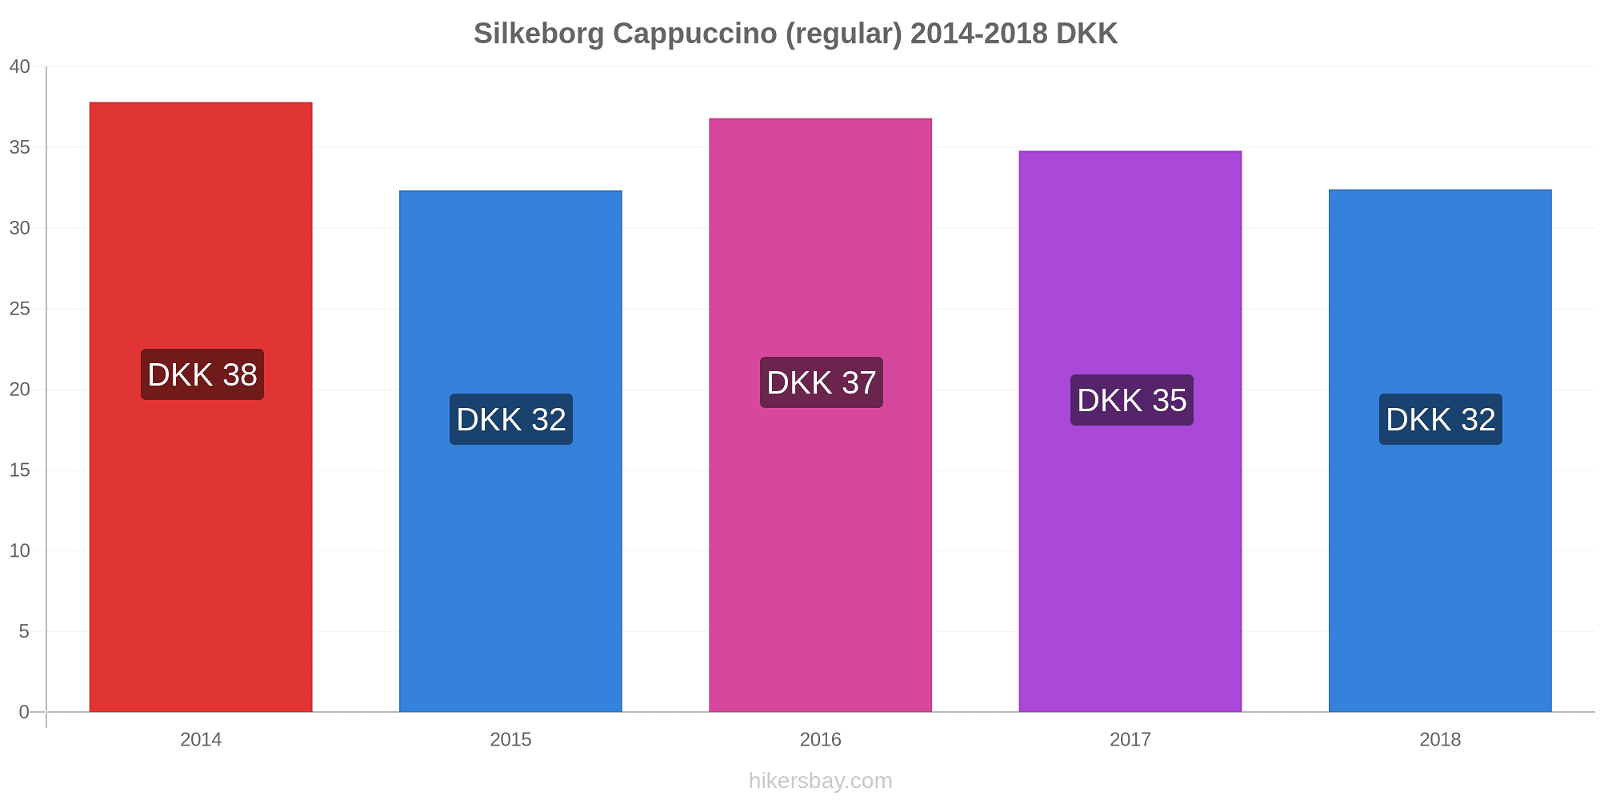 Silkeborg price changes Cappuccino (regular) hikersbay.com